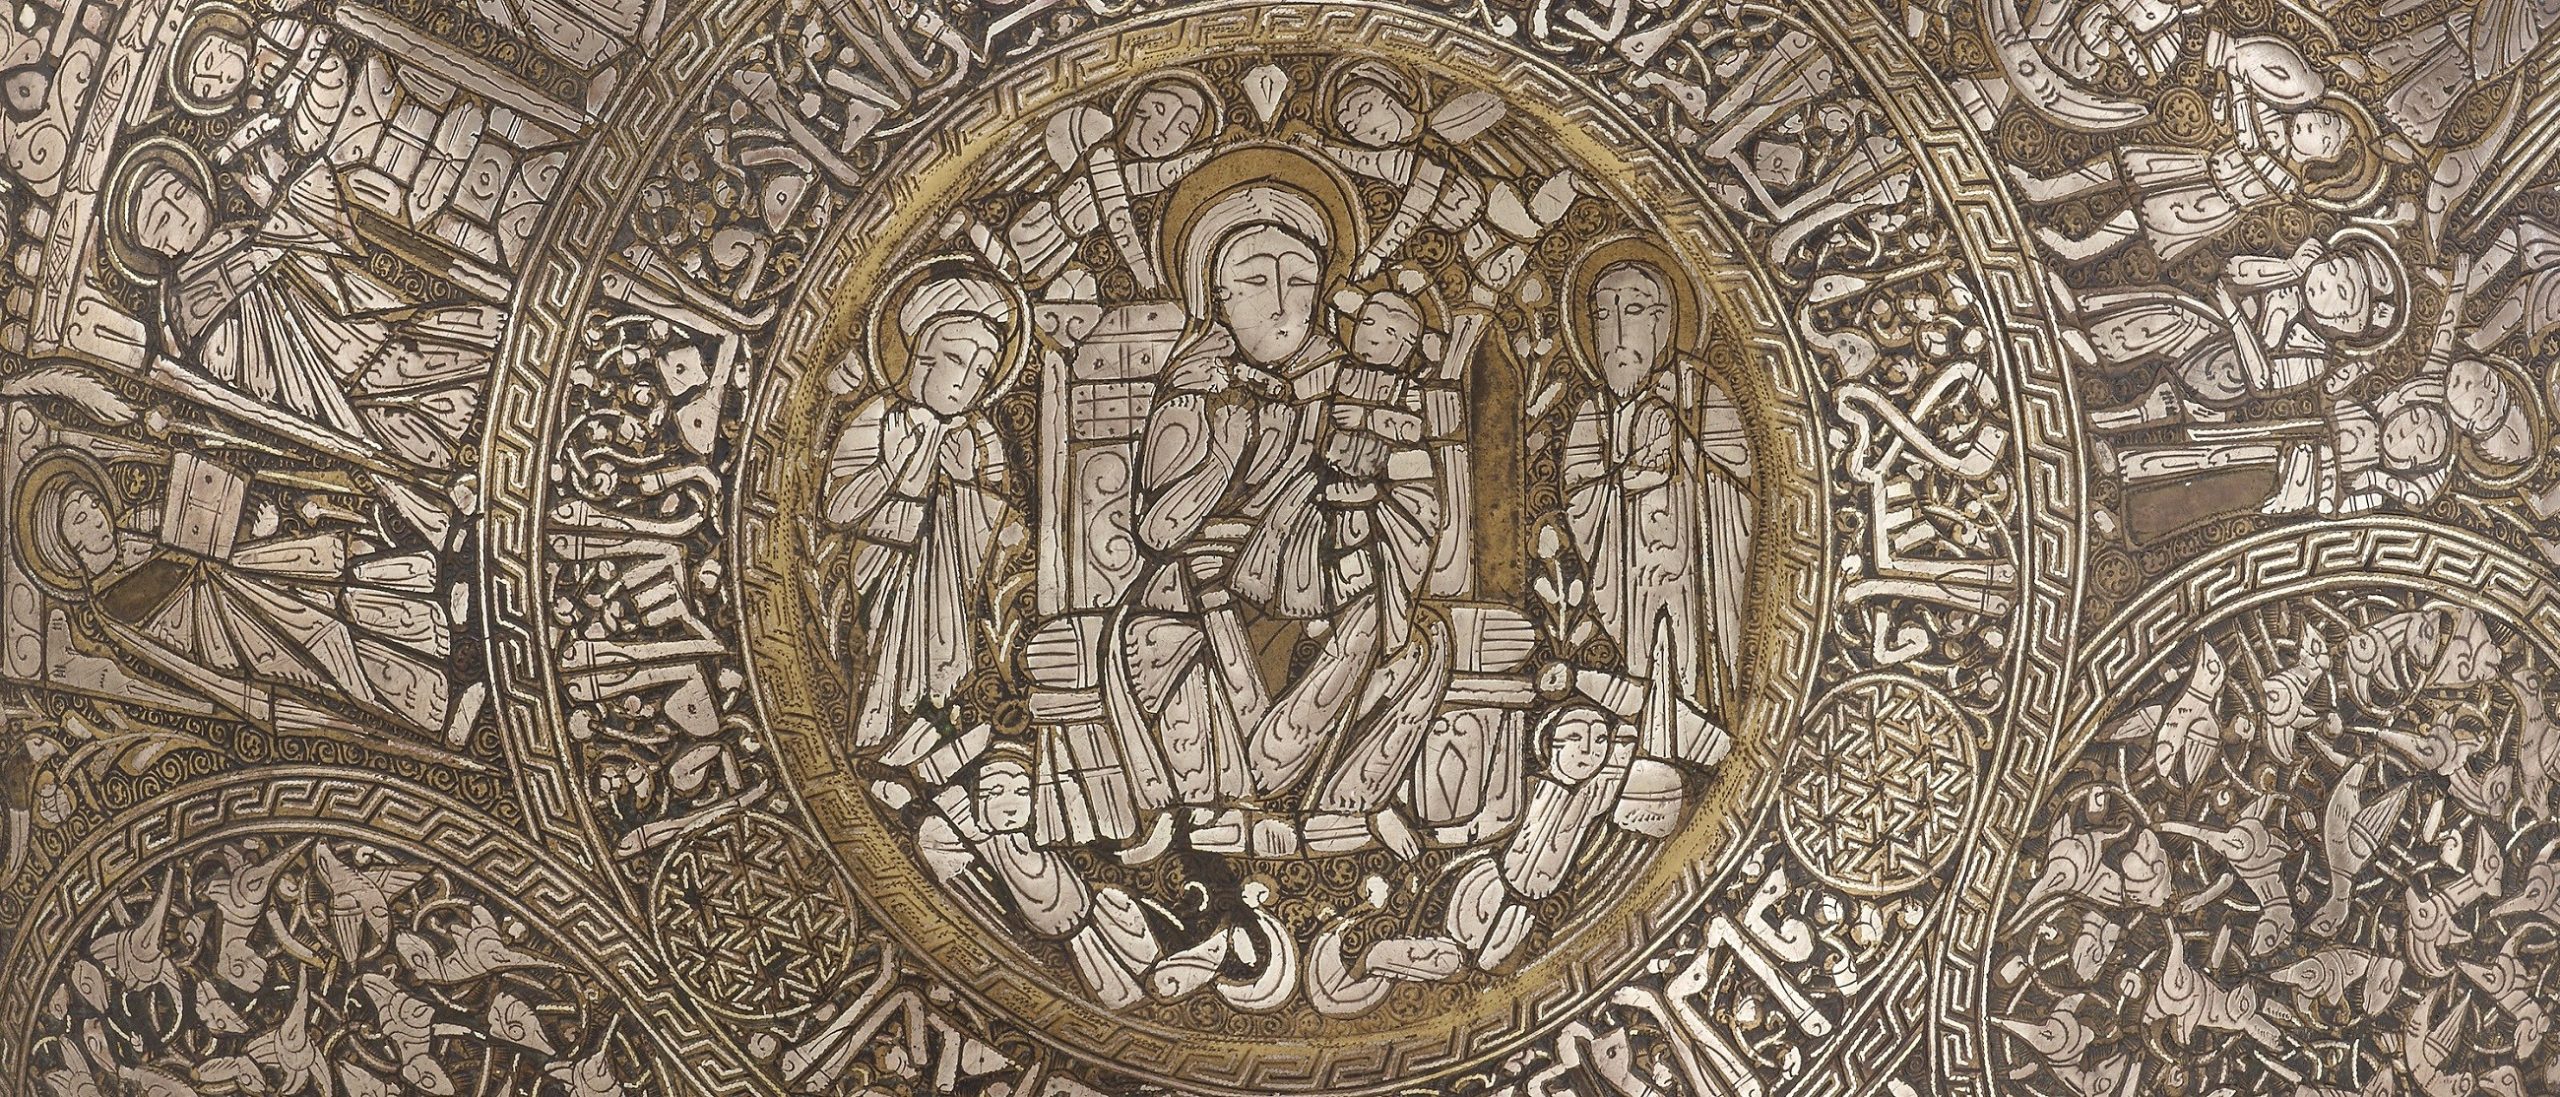 detail of a metal engraving